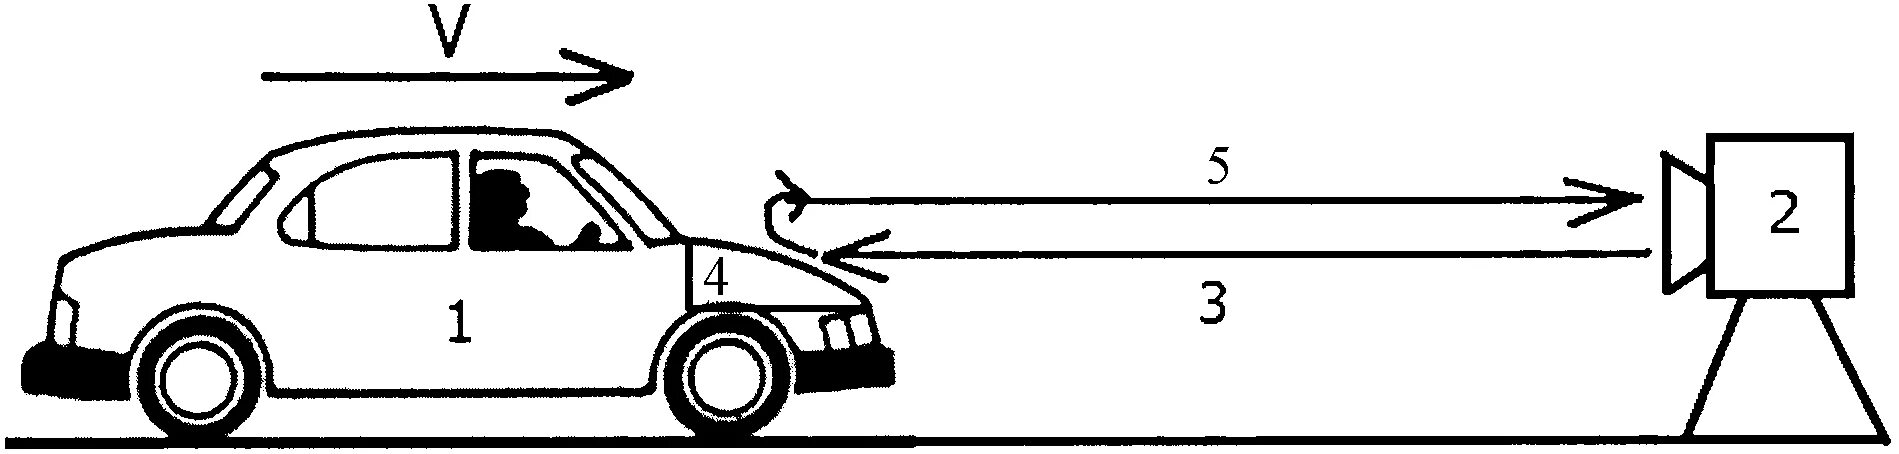 Скорость движения автомобиля улитки. Схема скоростей в автомобиле. Скорость рисунок. Устройство для определения скорости автомобиля. Скорость движения автомобиля.